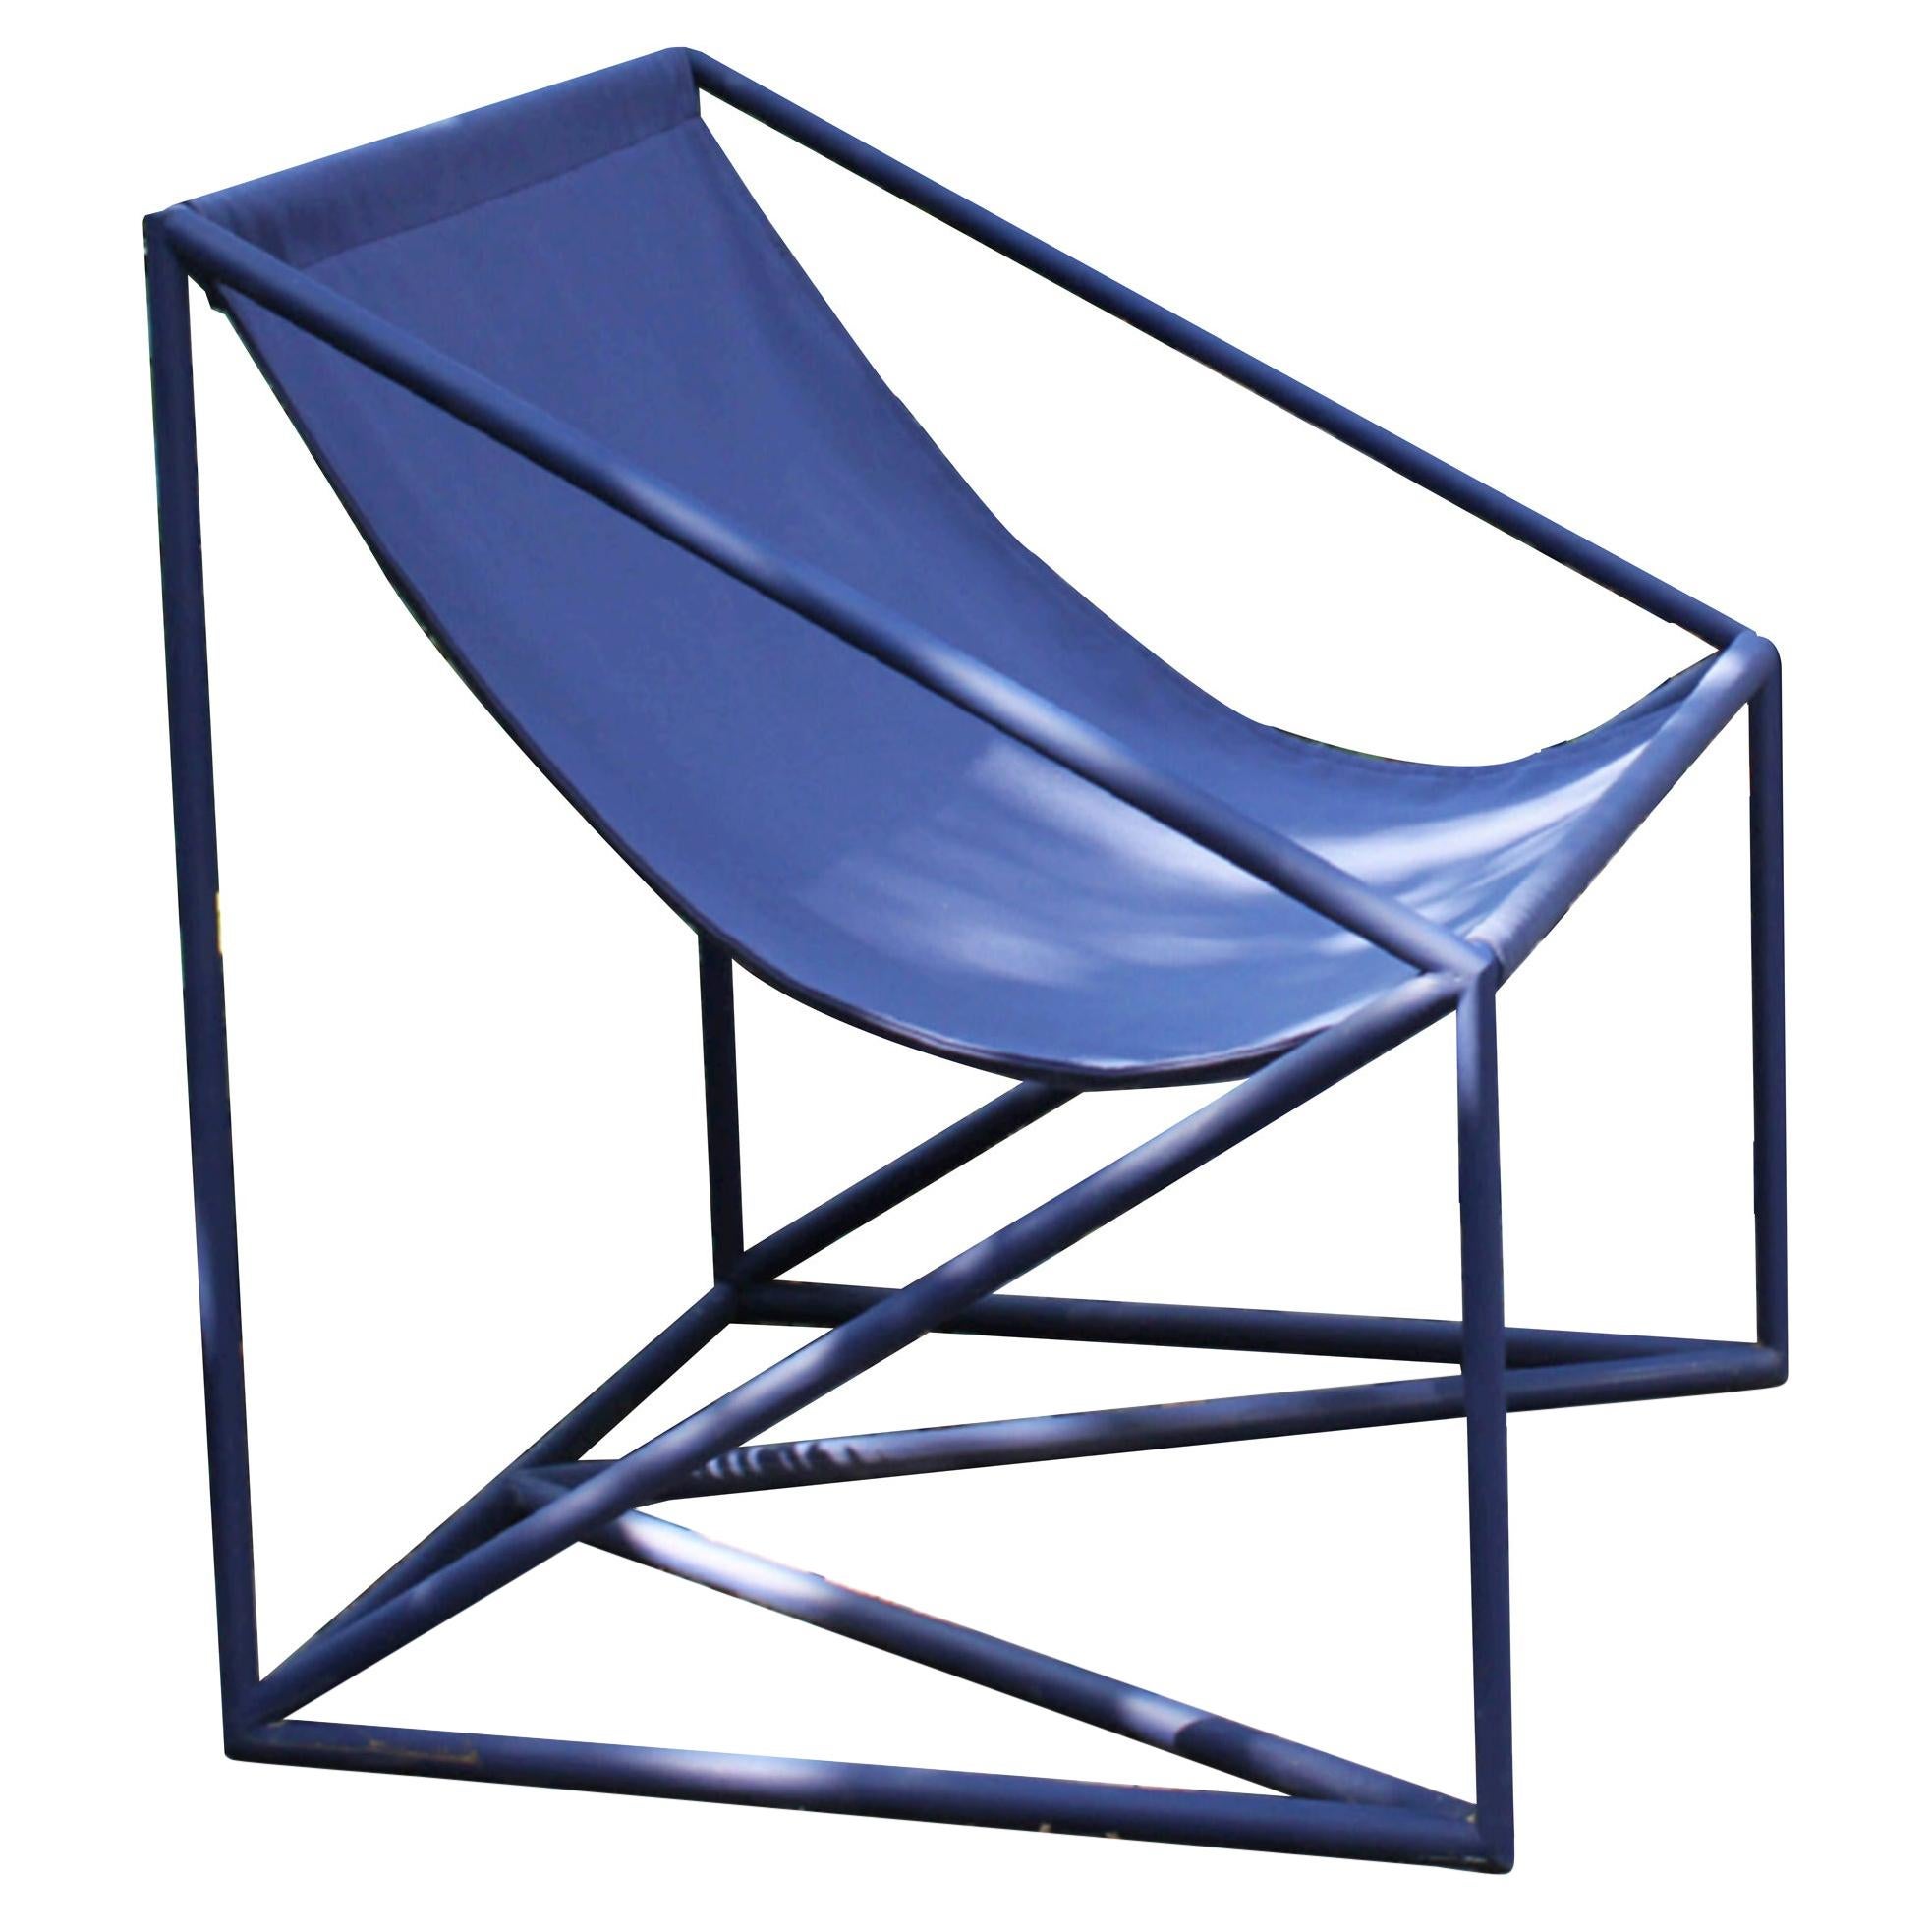 La Tuba-Stuhl für den Außenbereich, Maria Beckmann, vertreten von Tuleste Factory